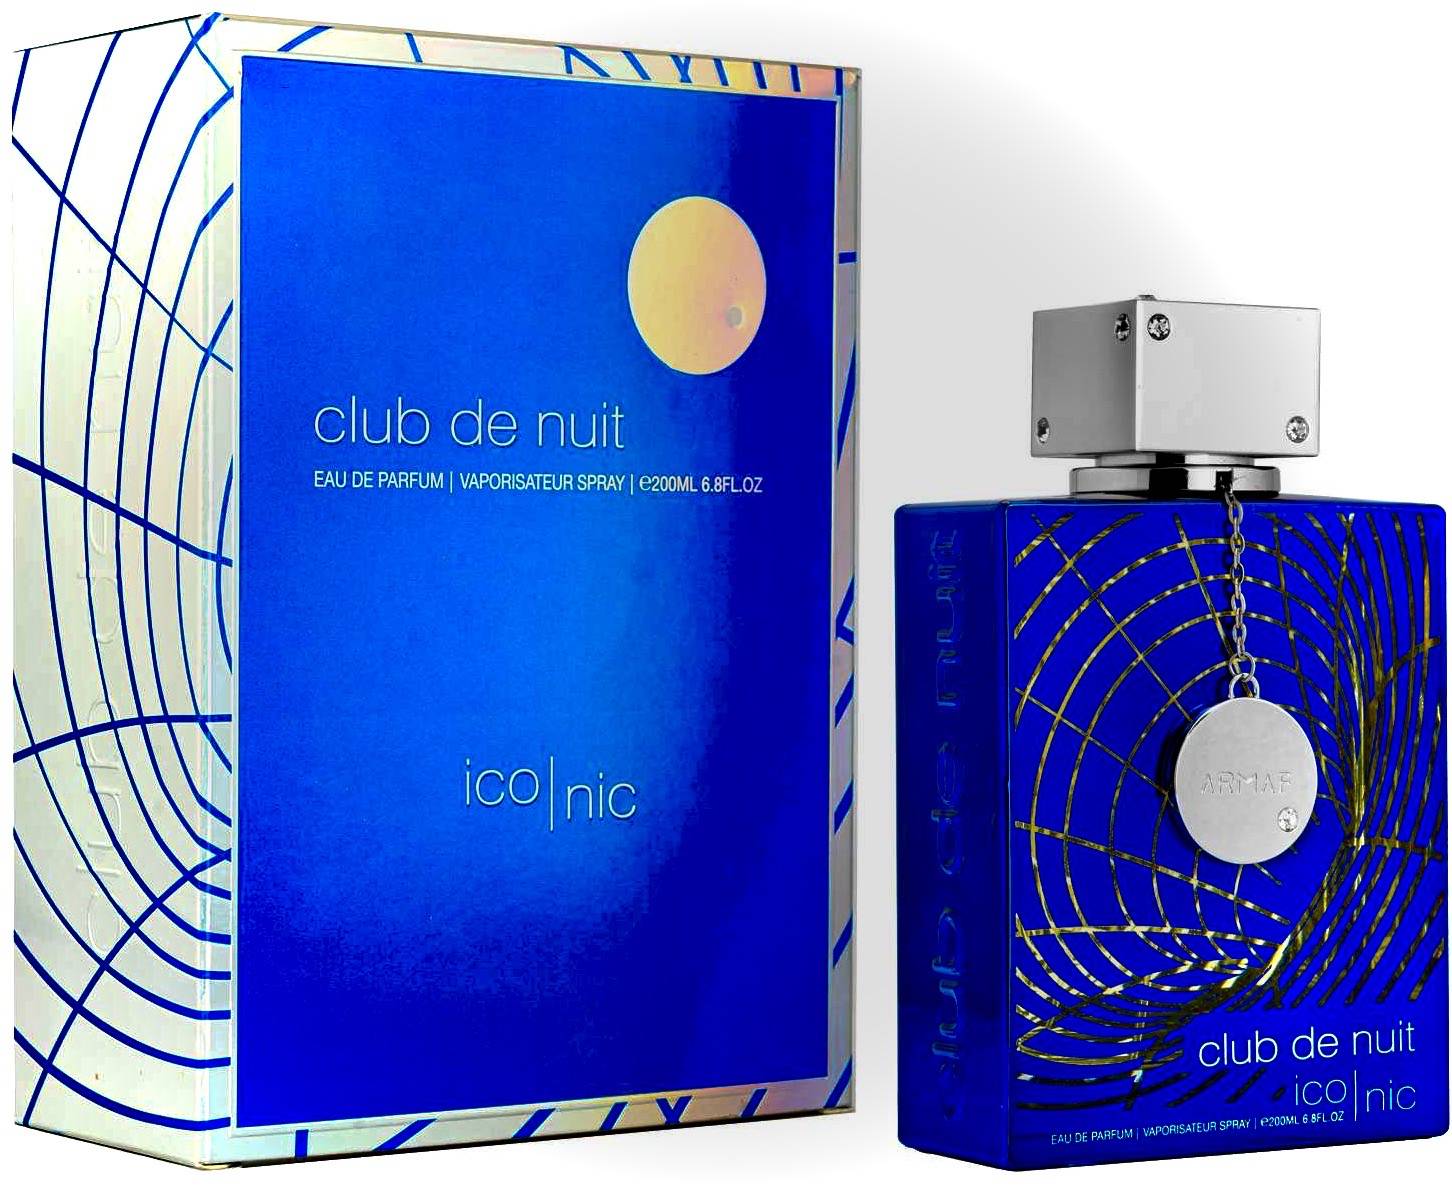 bleu de chanel eau de parfum 3.4 oz